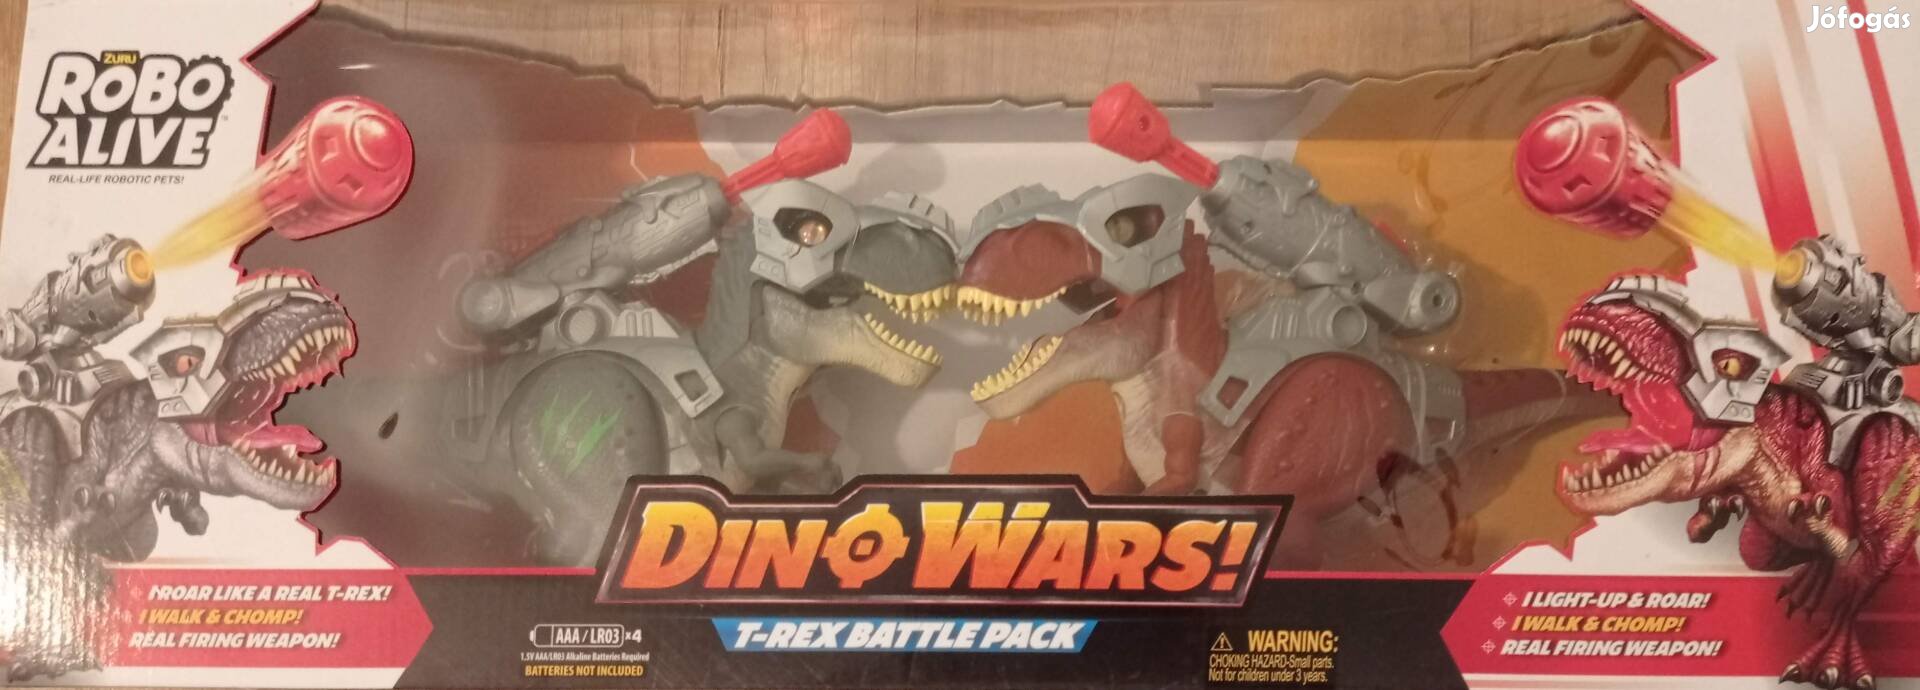 Robo Alive T-Rex Battle Pack